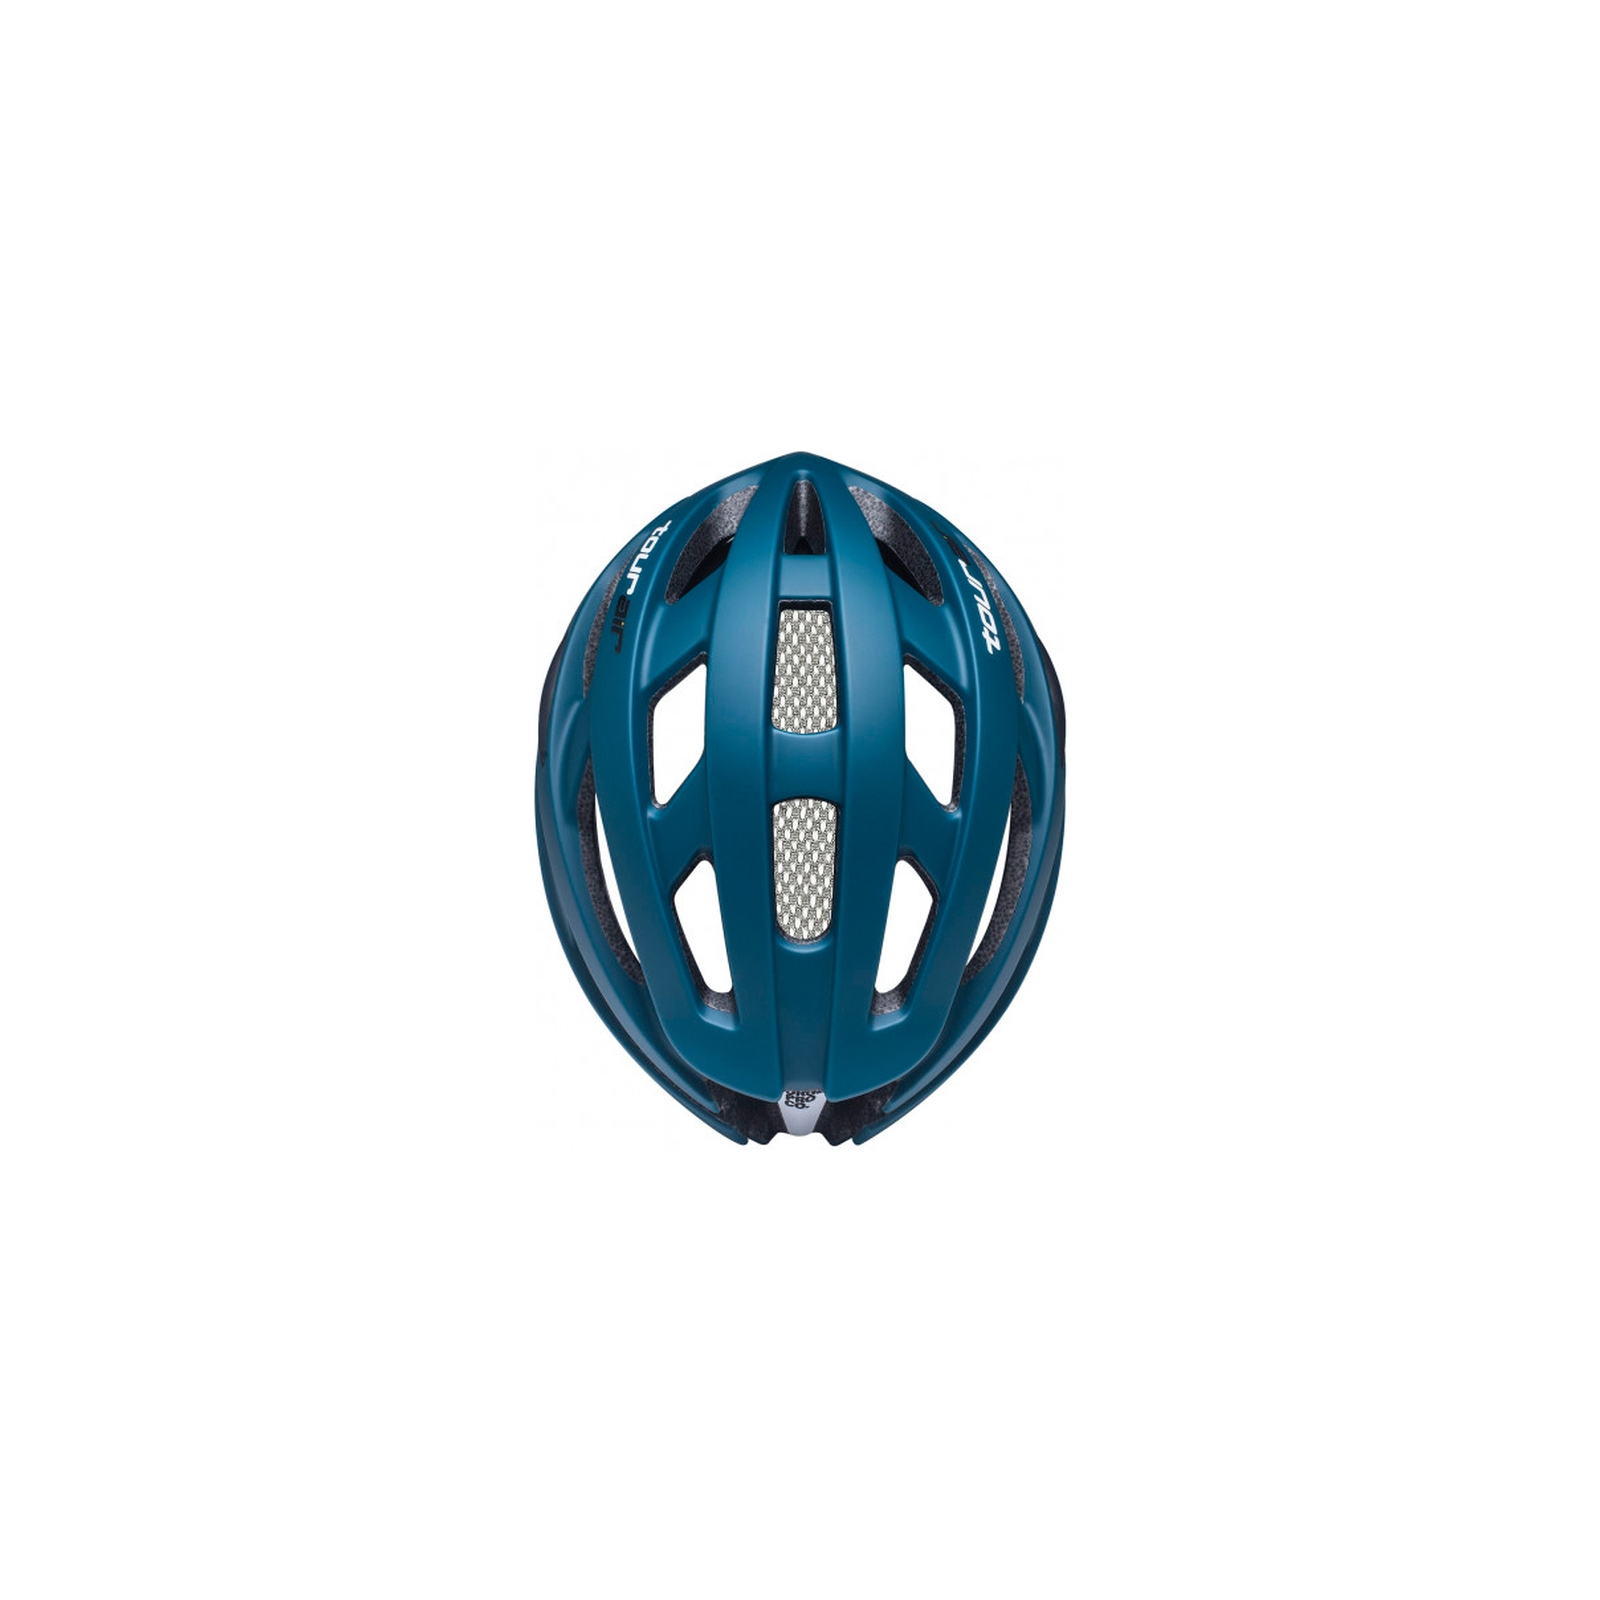 Шлем Urge TourAir Сірий L/XL 58-62 см (UBP23745L) изображение 3